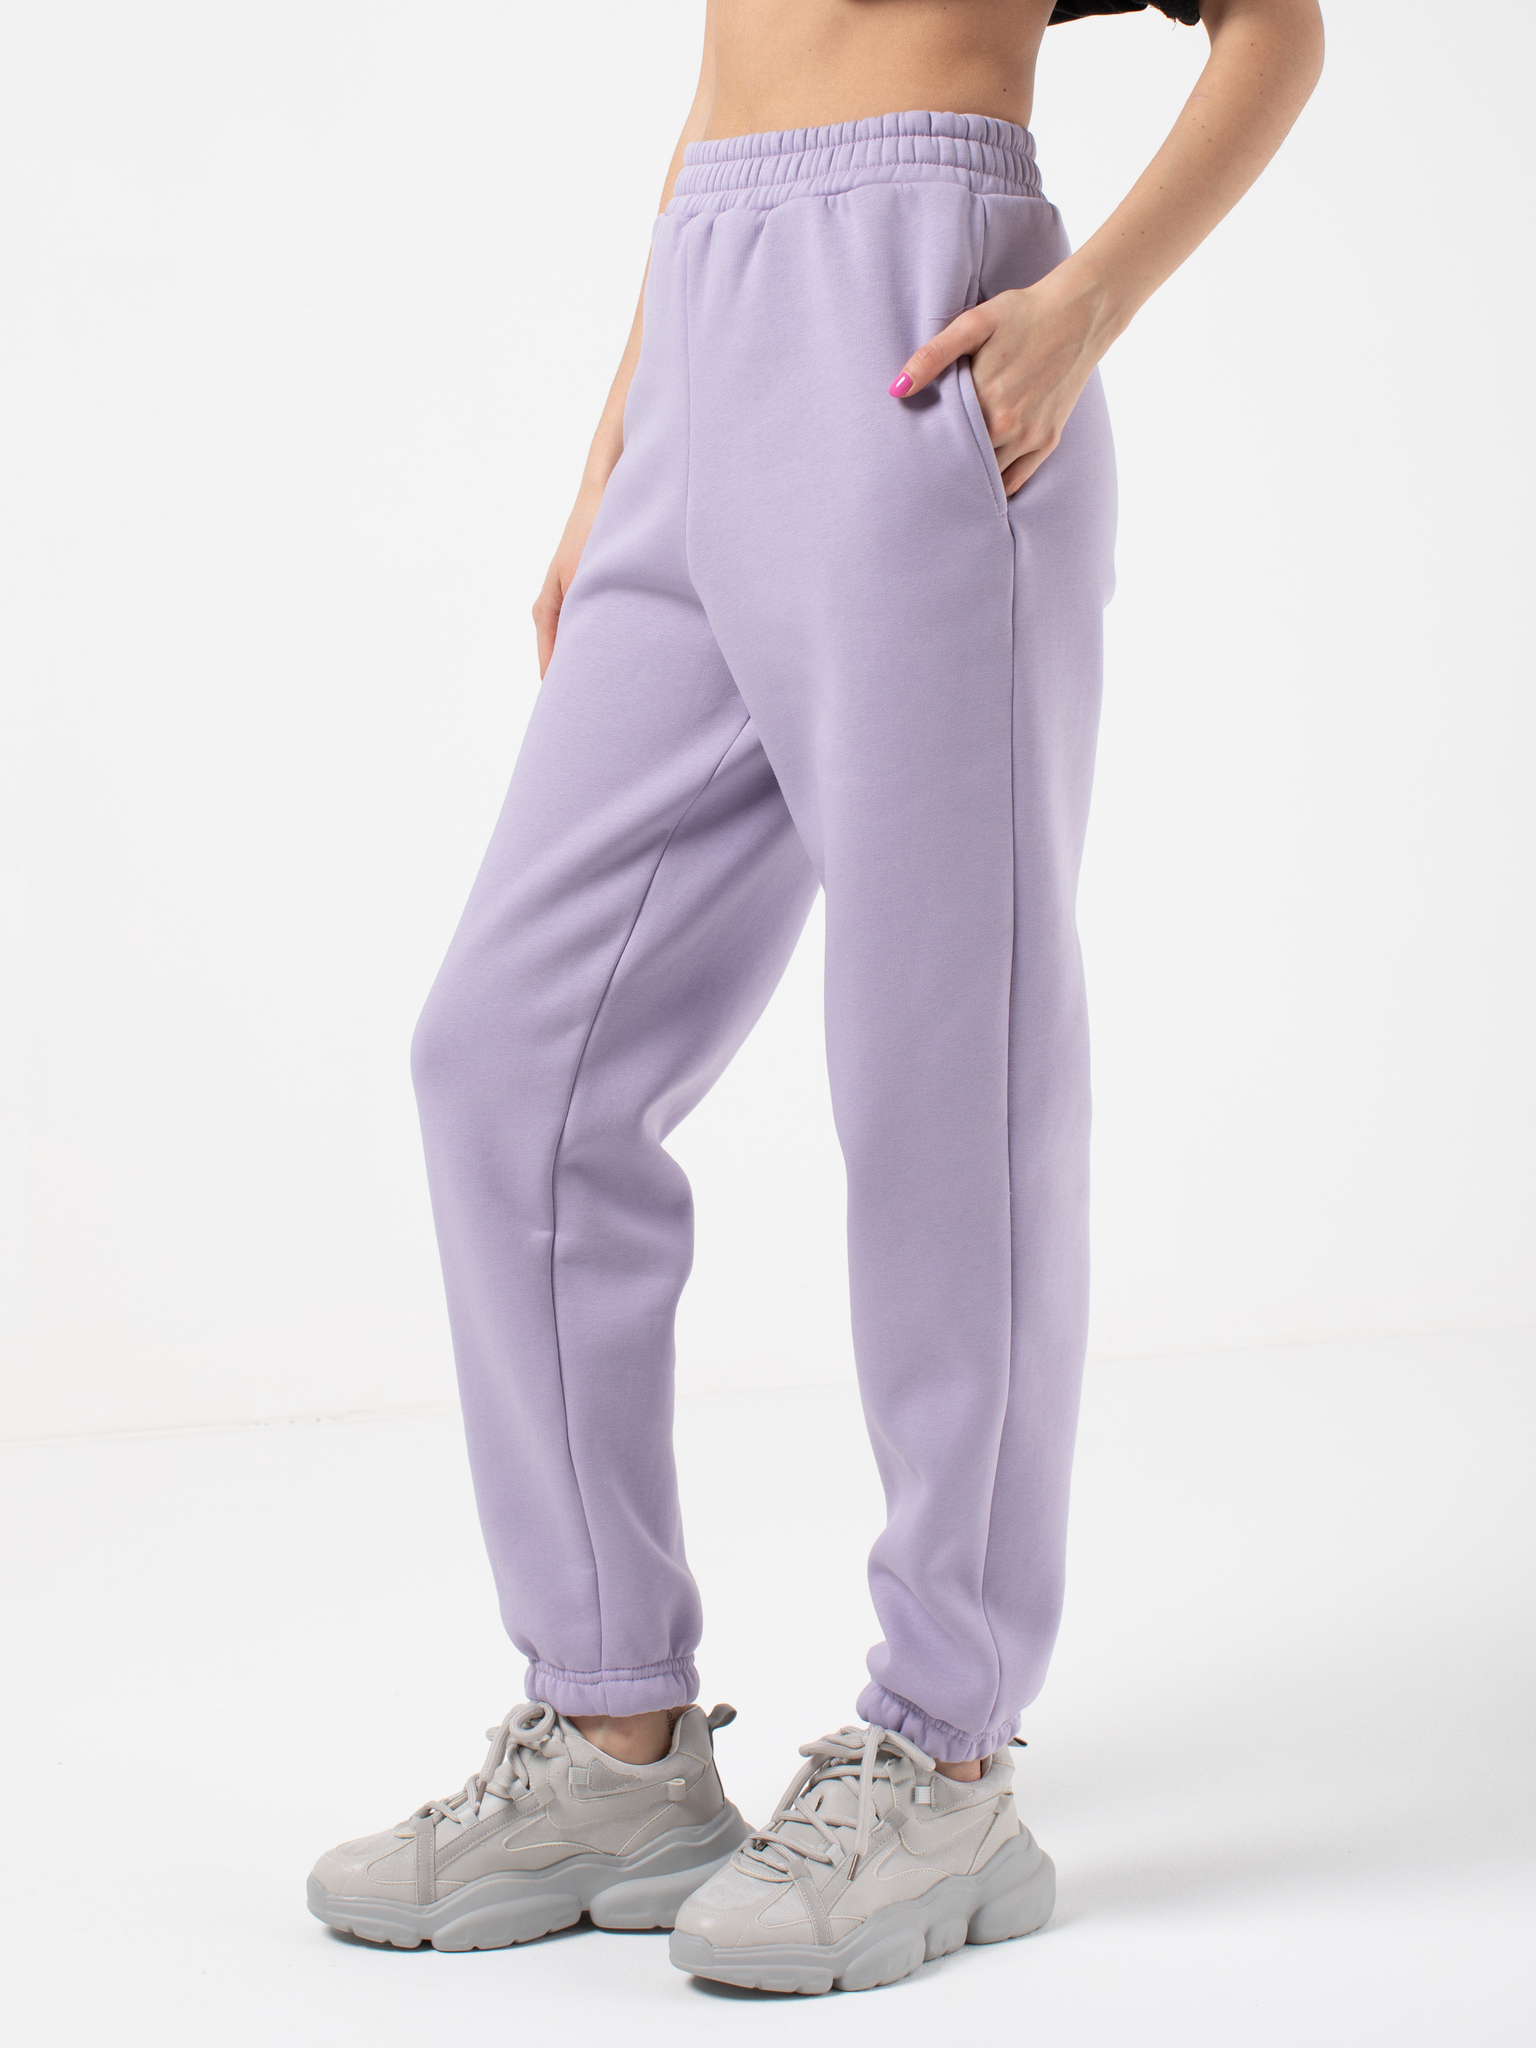 Брюки женские RAVENCLO overpants фиолетовые 42-44 RU